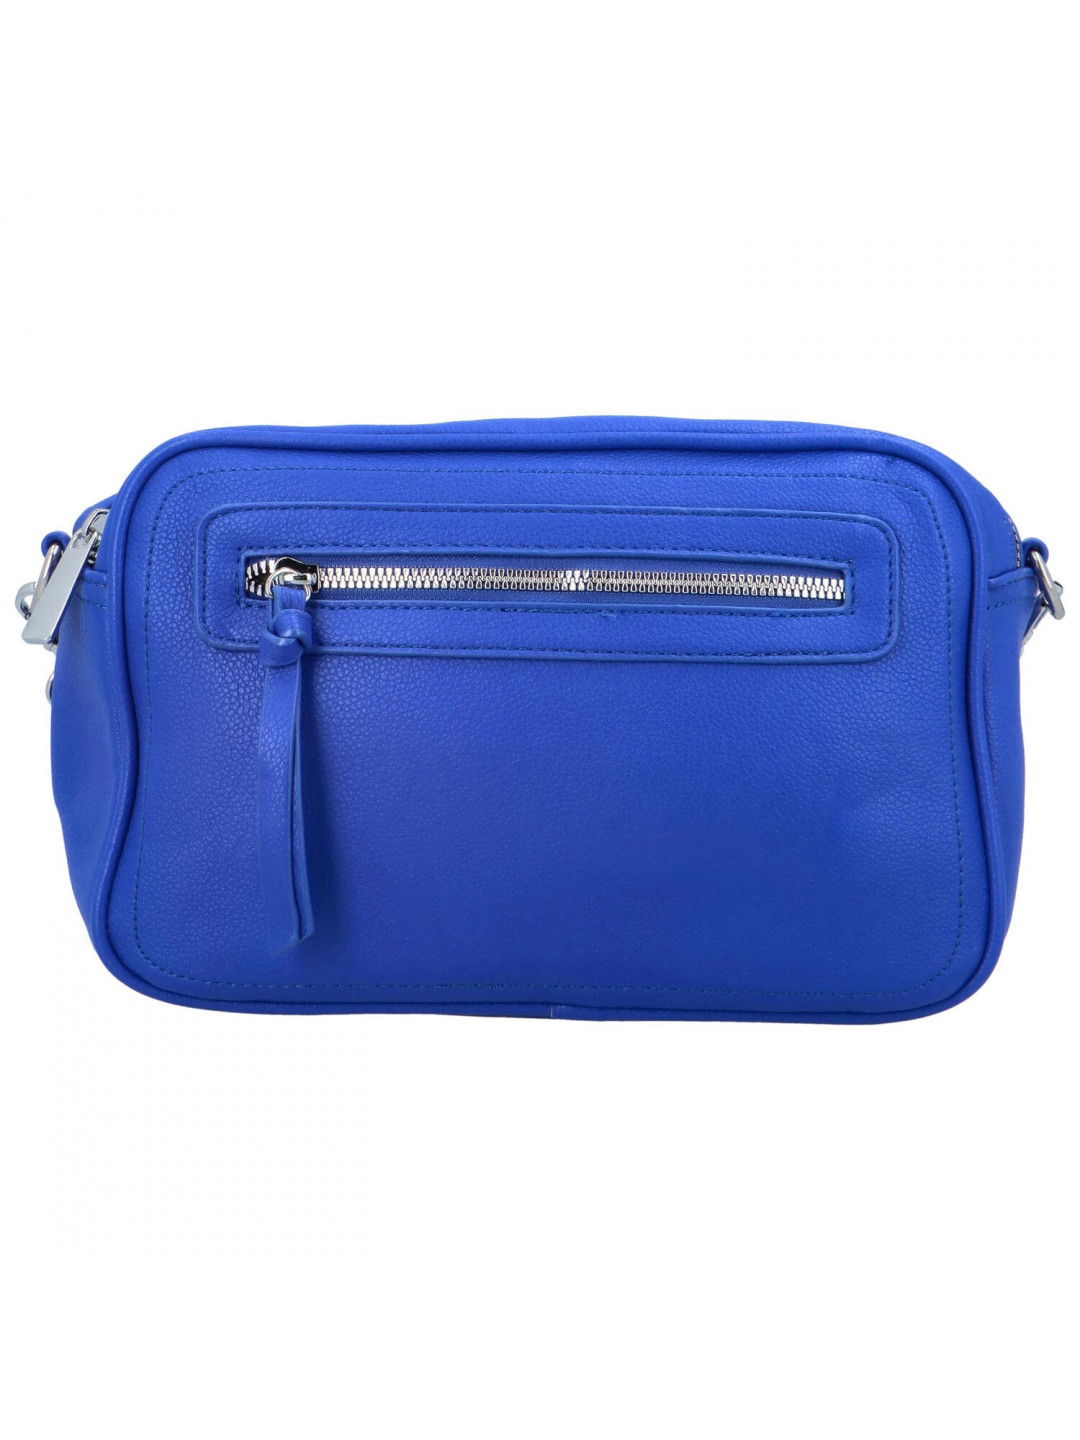 Dámská crossbody kabelka zářivě modrá – Paolo bags Tselmega